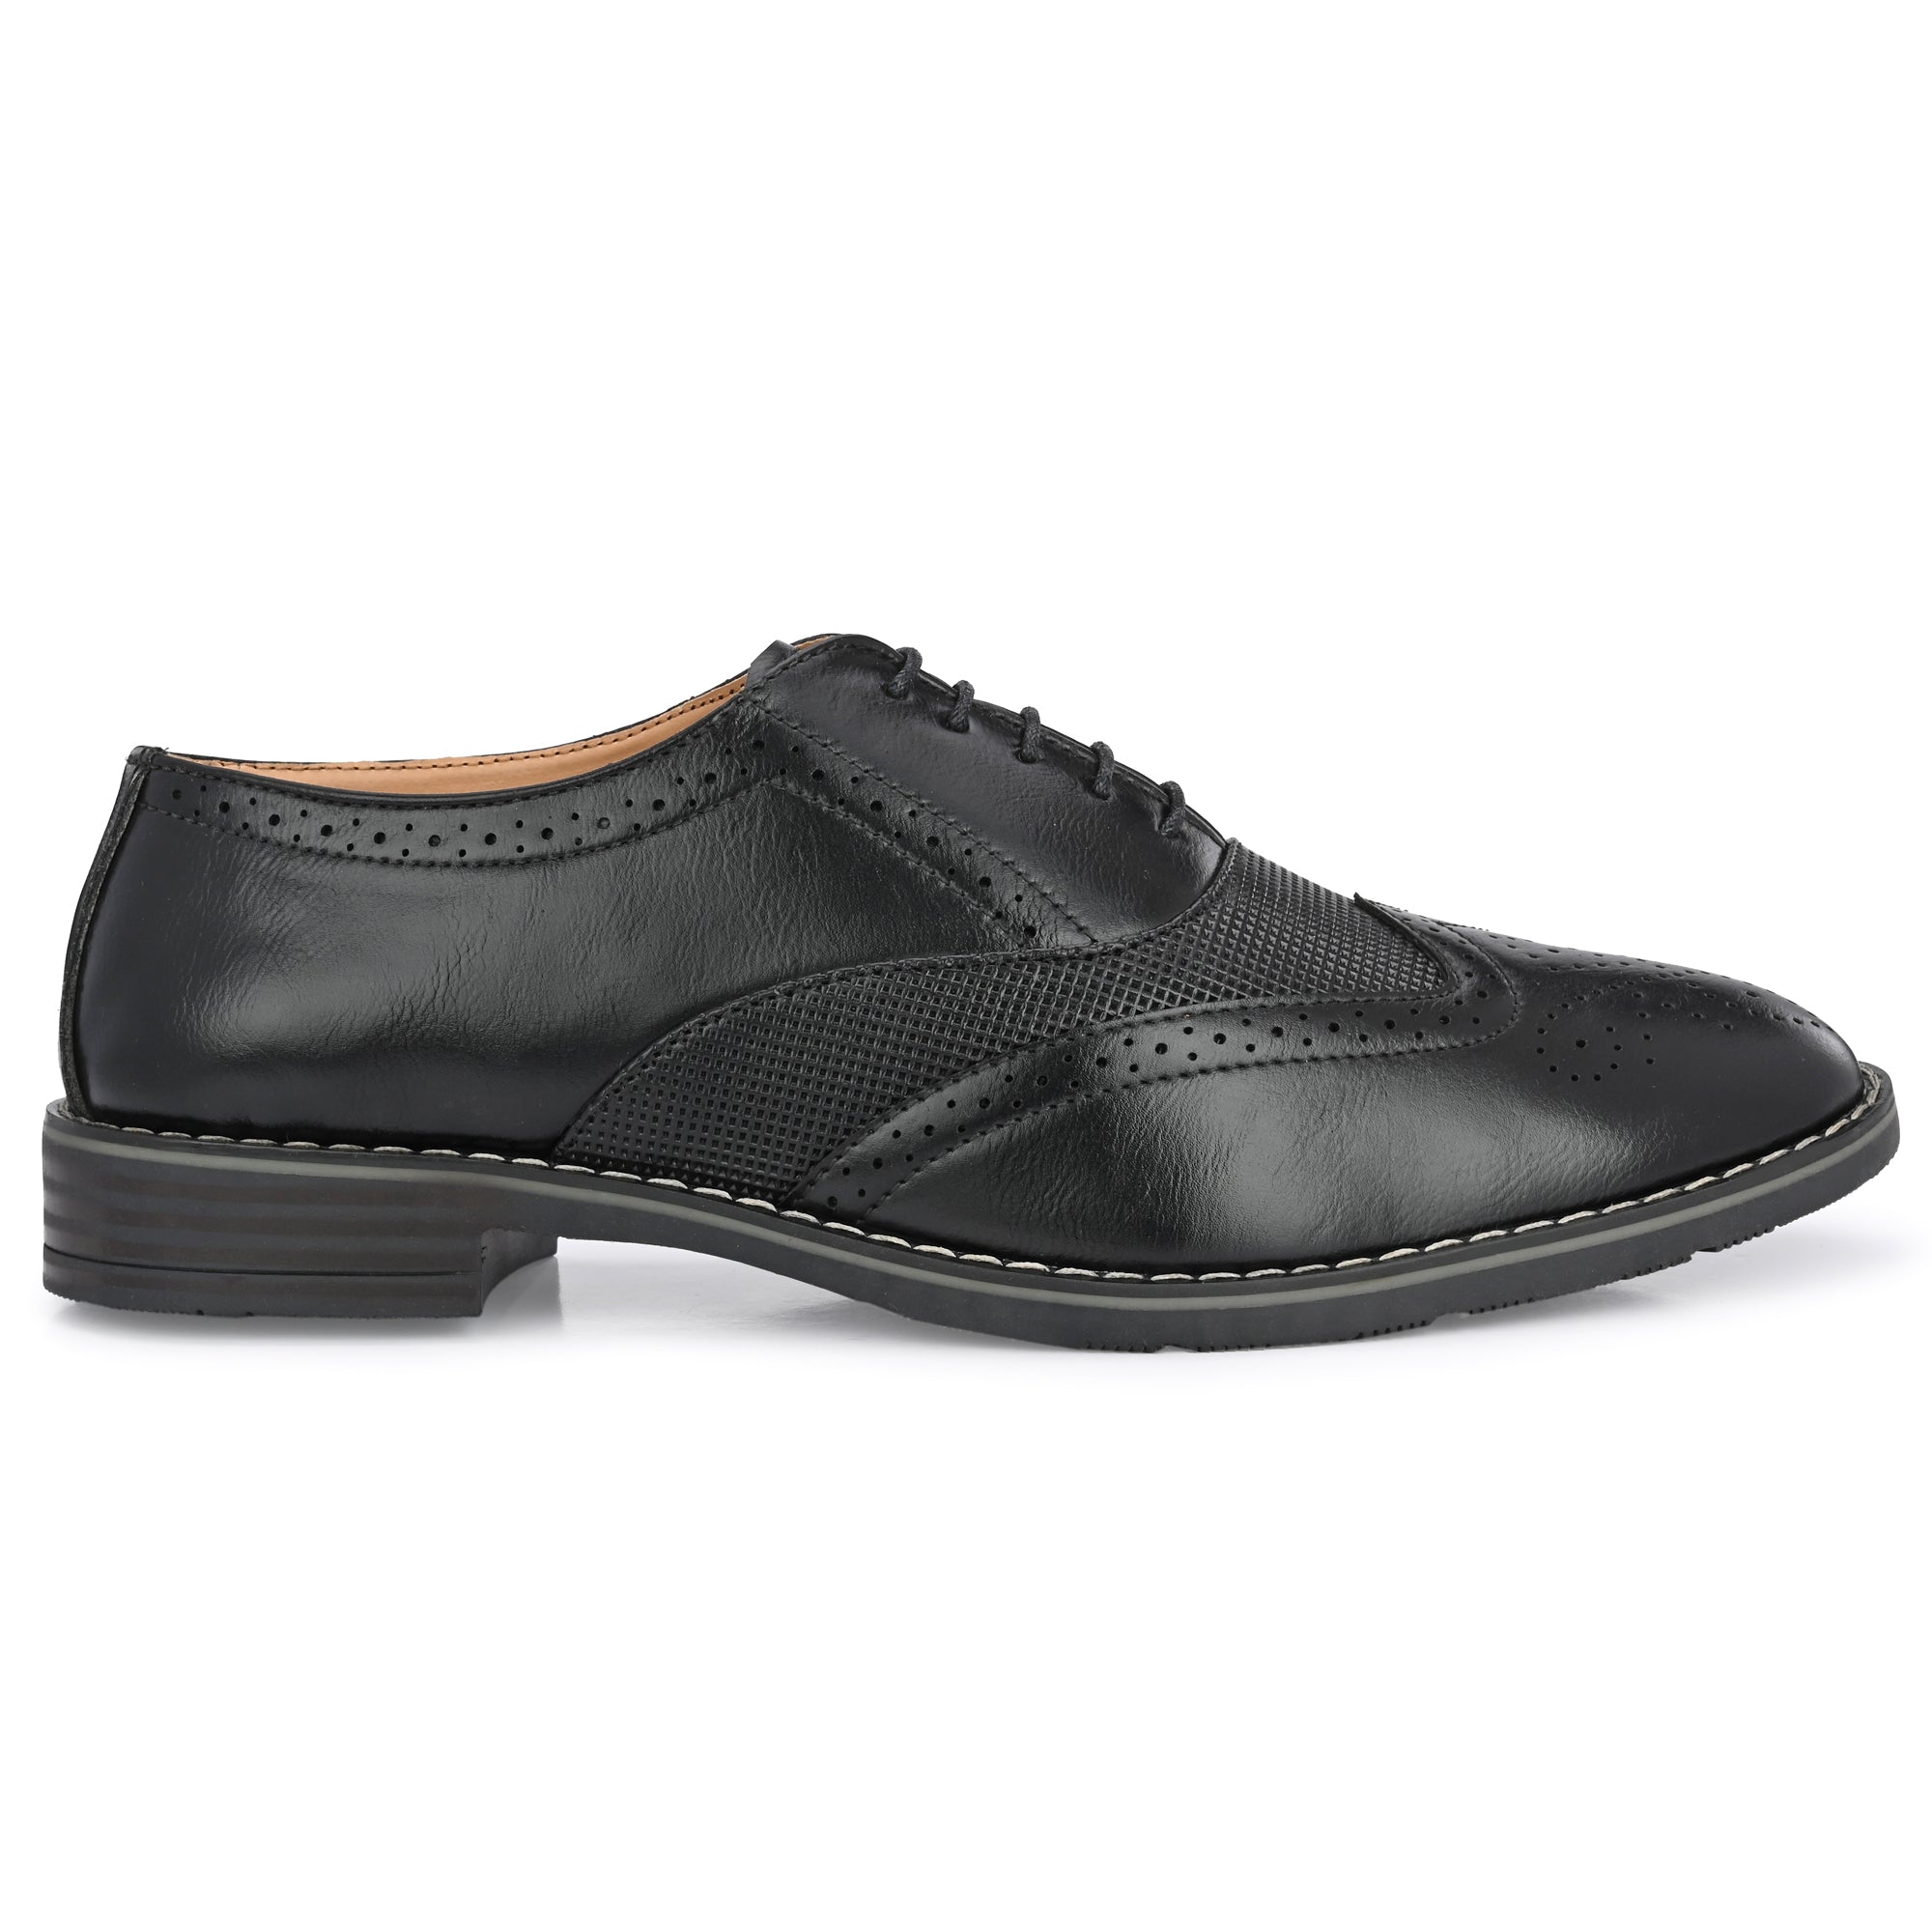 black-formal-lace-up-attitudist-shoes-for-men-sp9a